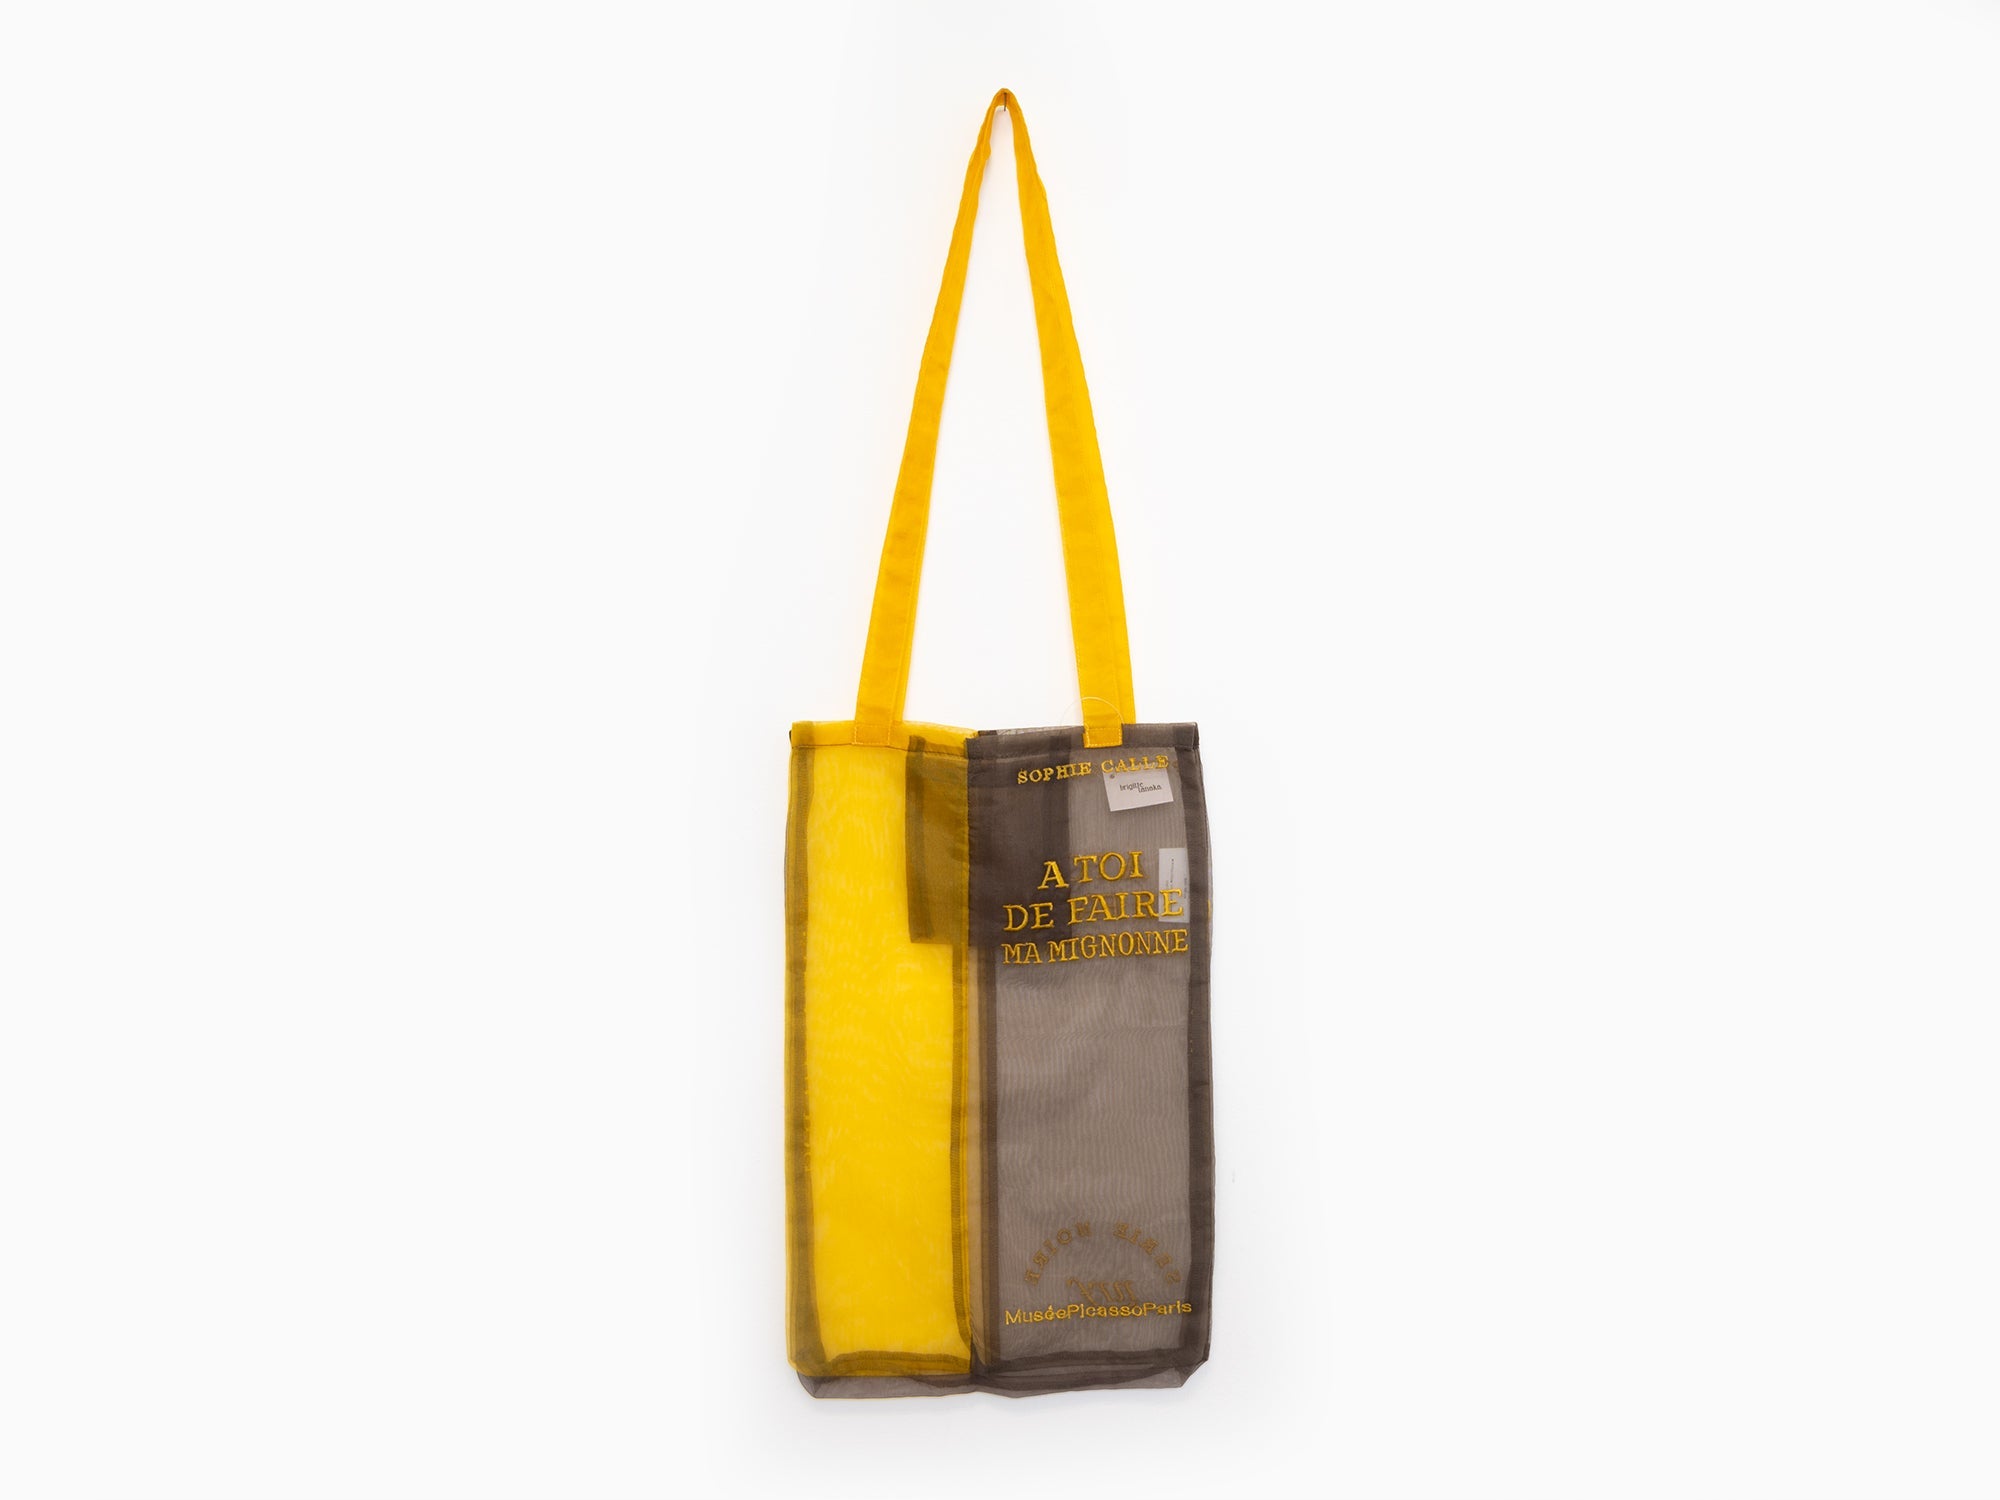 Sophie Calle - À toi de faire, ma mignonne FTote bag (jaune et noir)